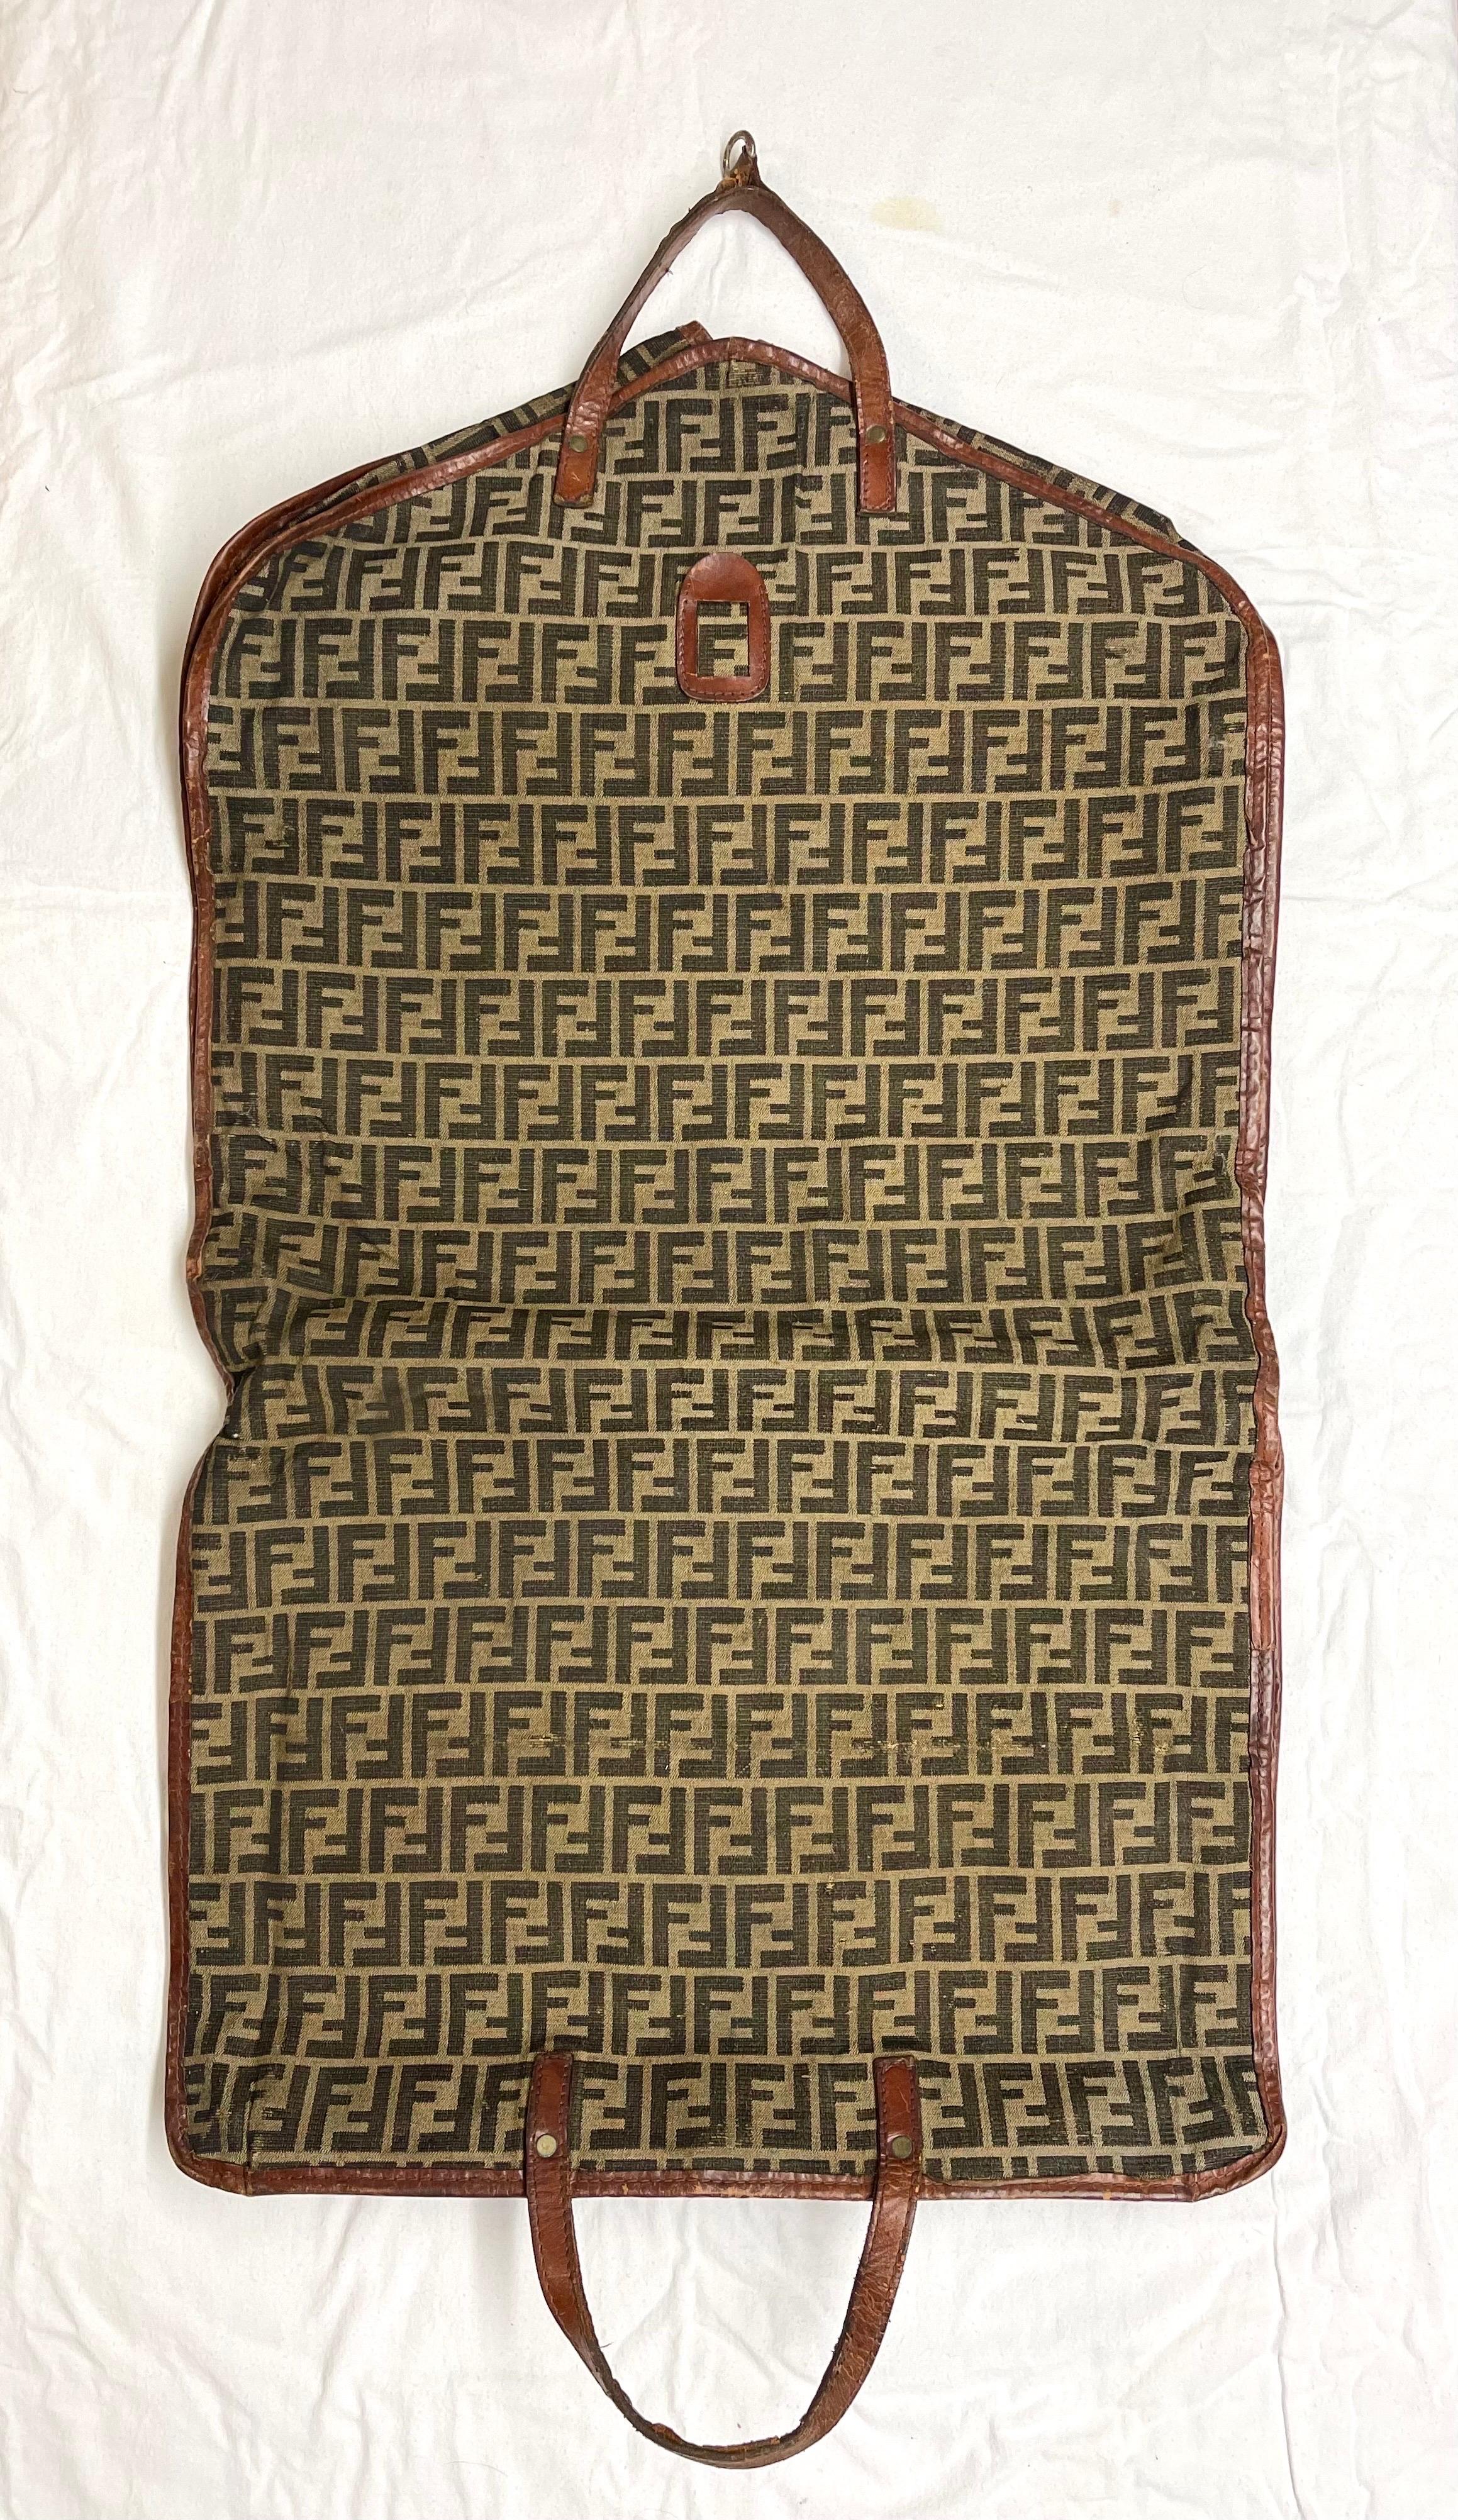 Rare Vintage Fendi Zucca Monogram Garment Travel Carrier. Klassische Zucca FF  Monogram-Muster auf braunem und tanfarbenem Canvas mit Lederbesatz. Perfekt für die modebewusste Weltreisende. 
Maße: ca. 44